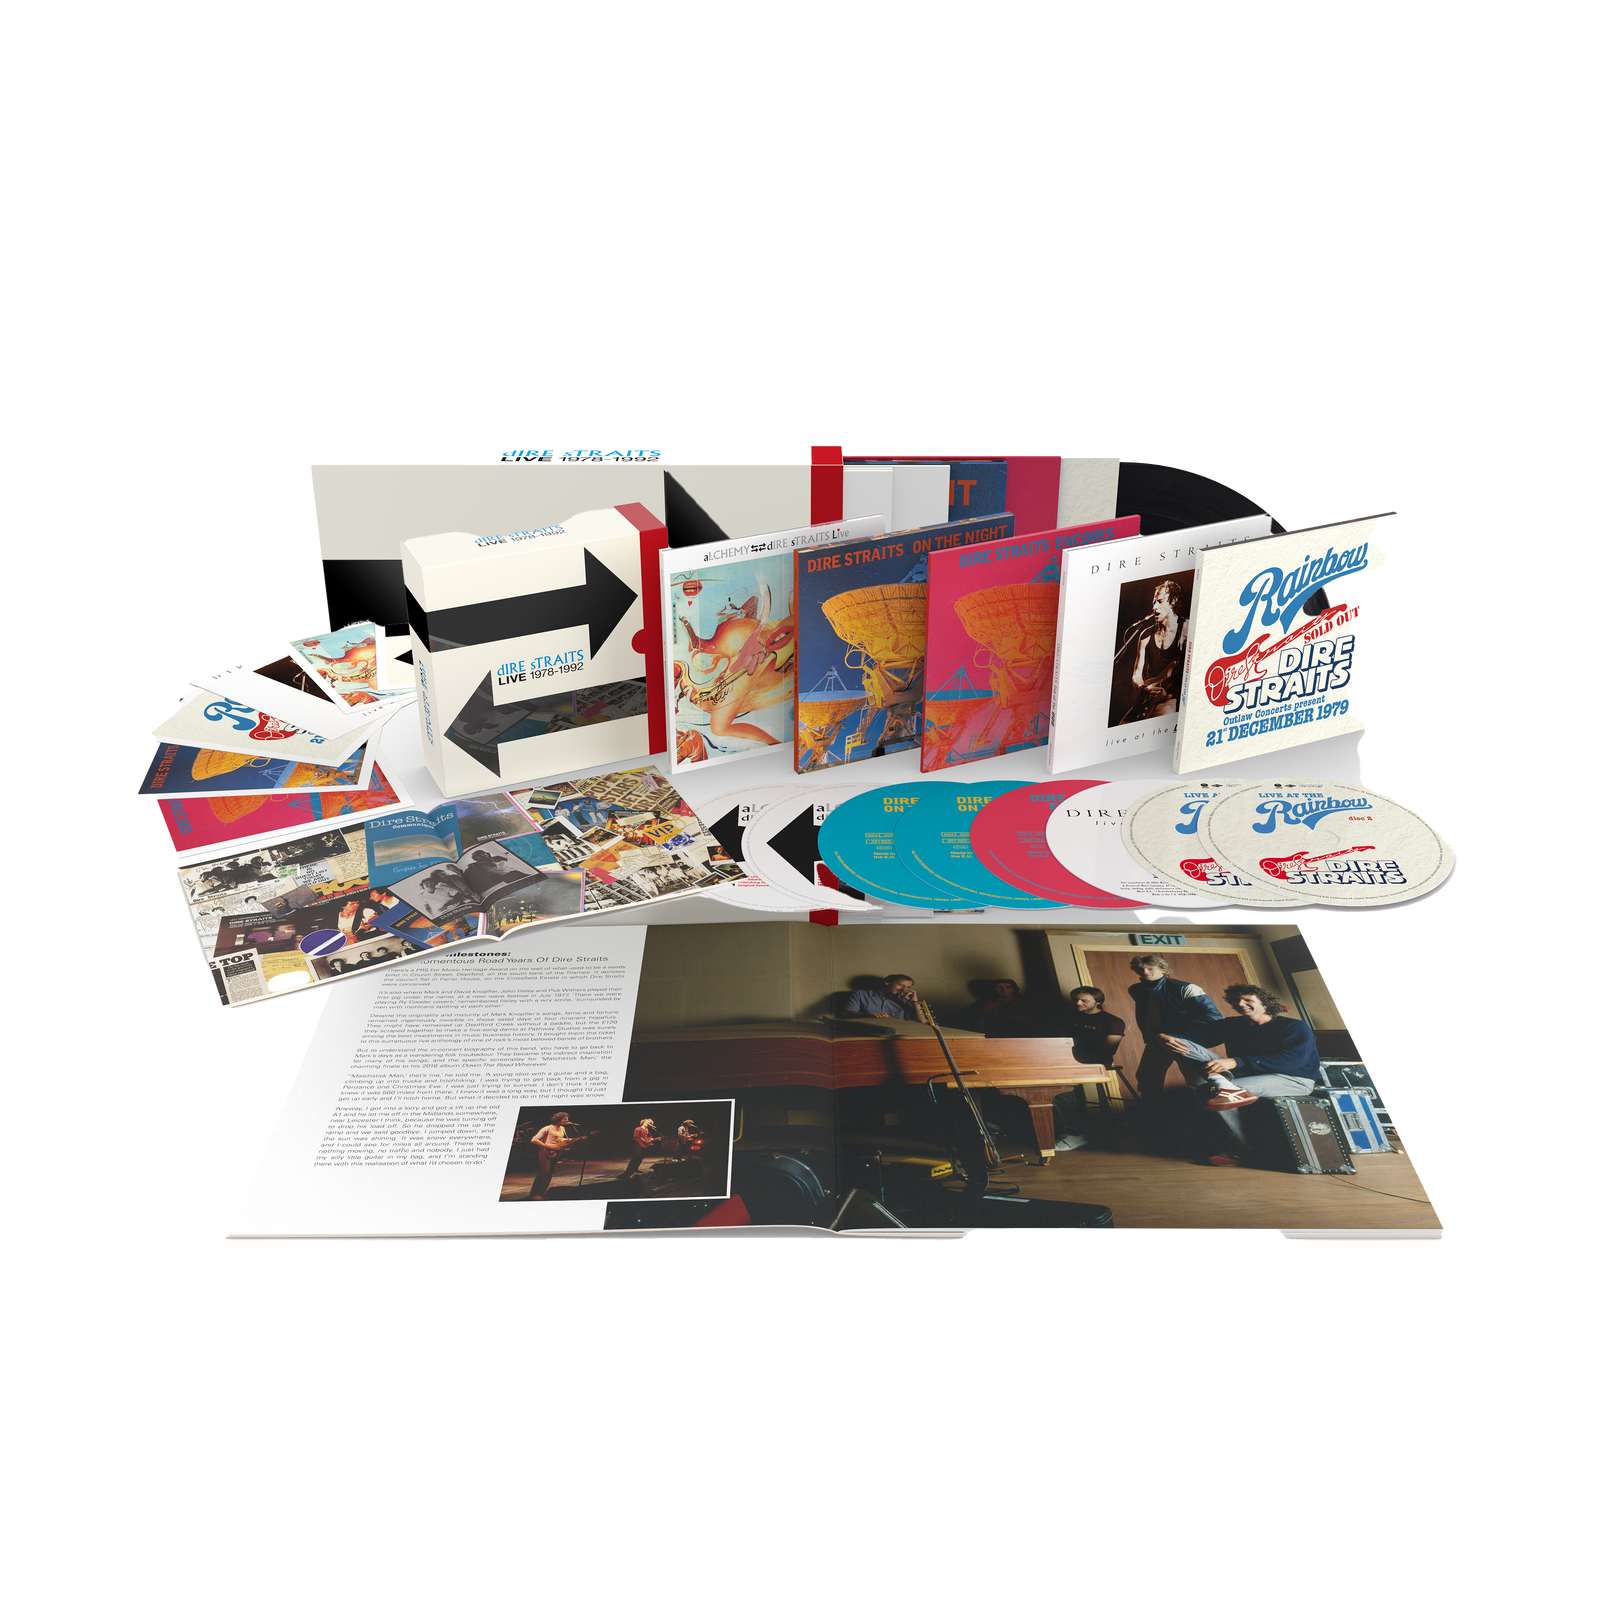 Dire Straits - The Live Albums 1978-1992: 8CD Box Set - uDiscover